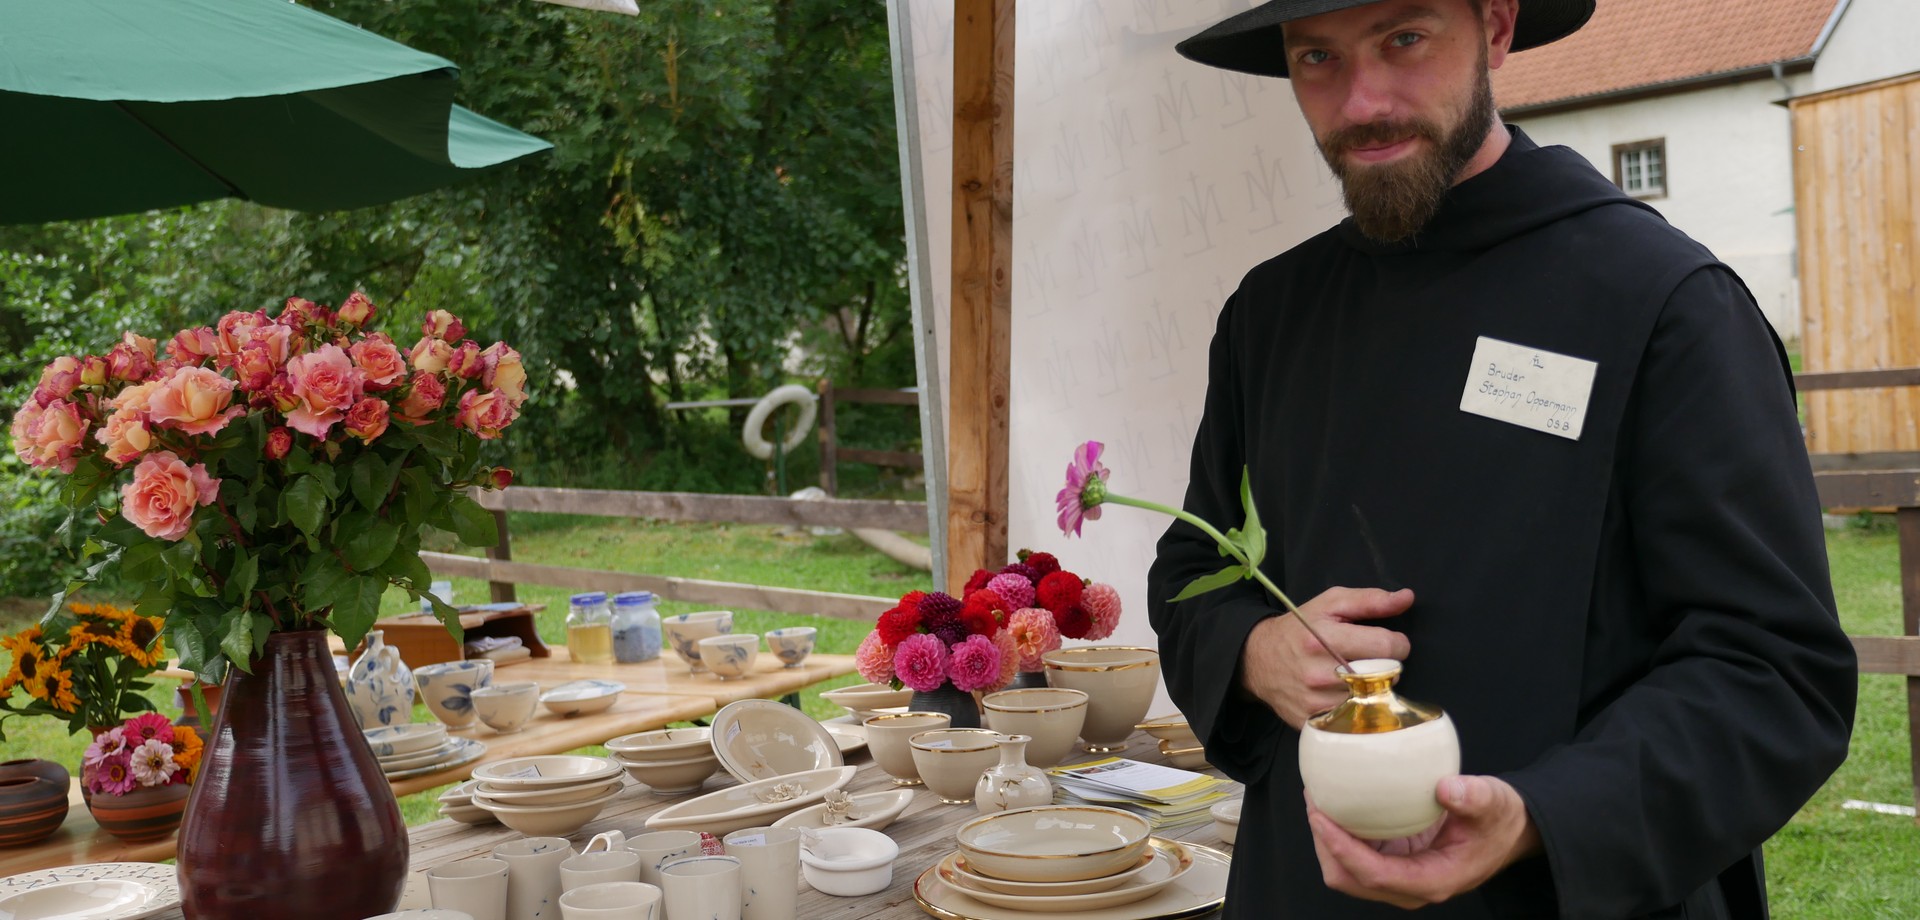 Auf dem Foto sieht man Bruder Stephan, der die in Maria Laach hergestellte Keramik präsentiert.

Foto: LWL